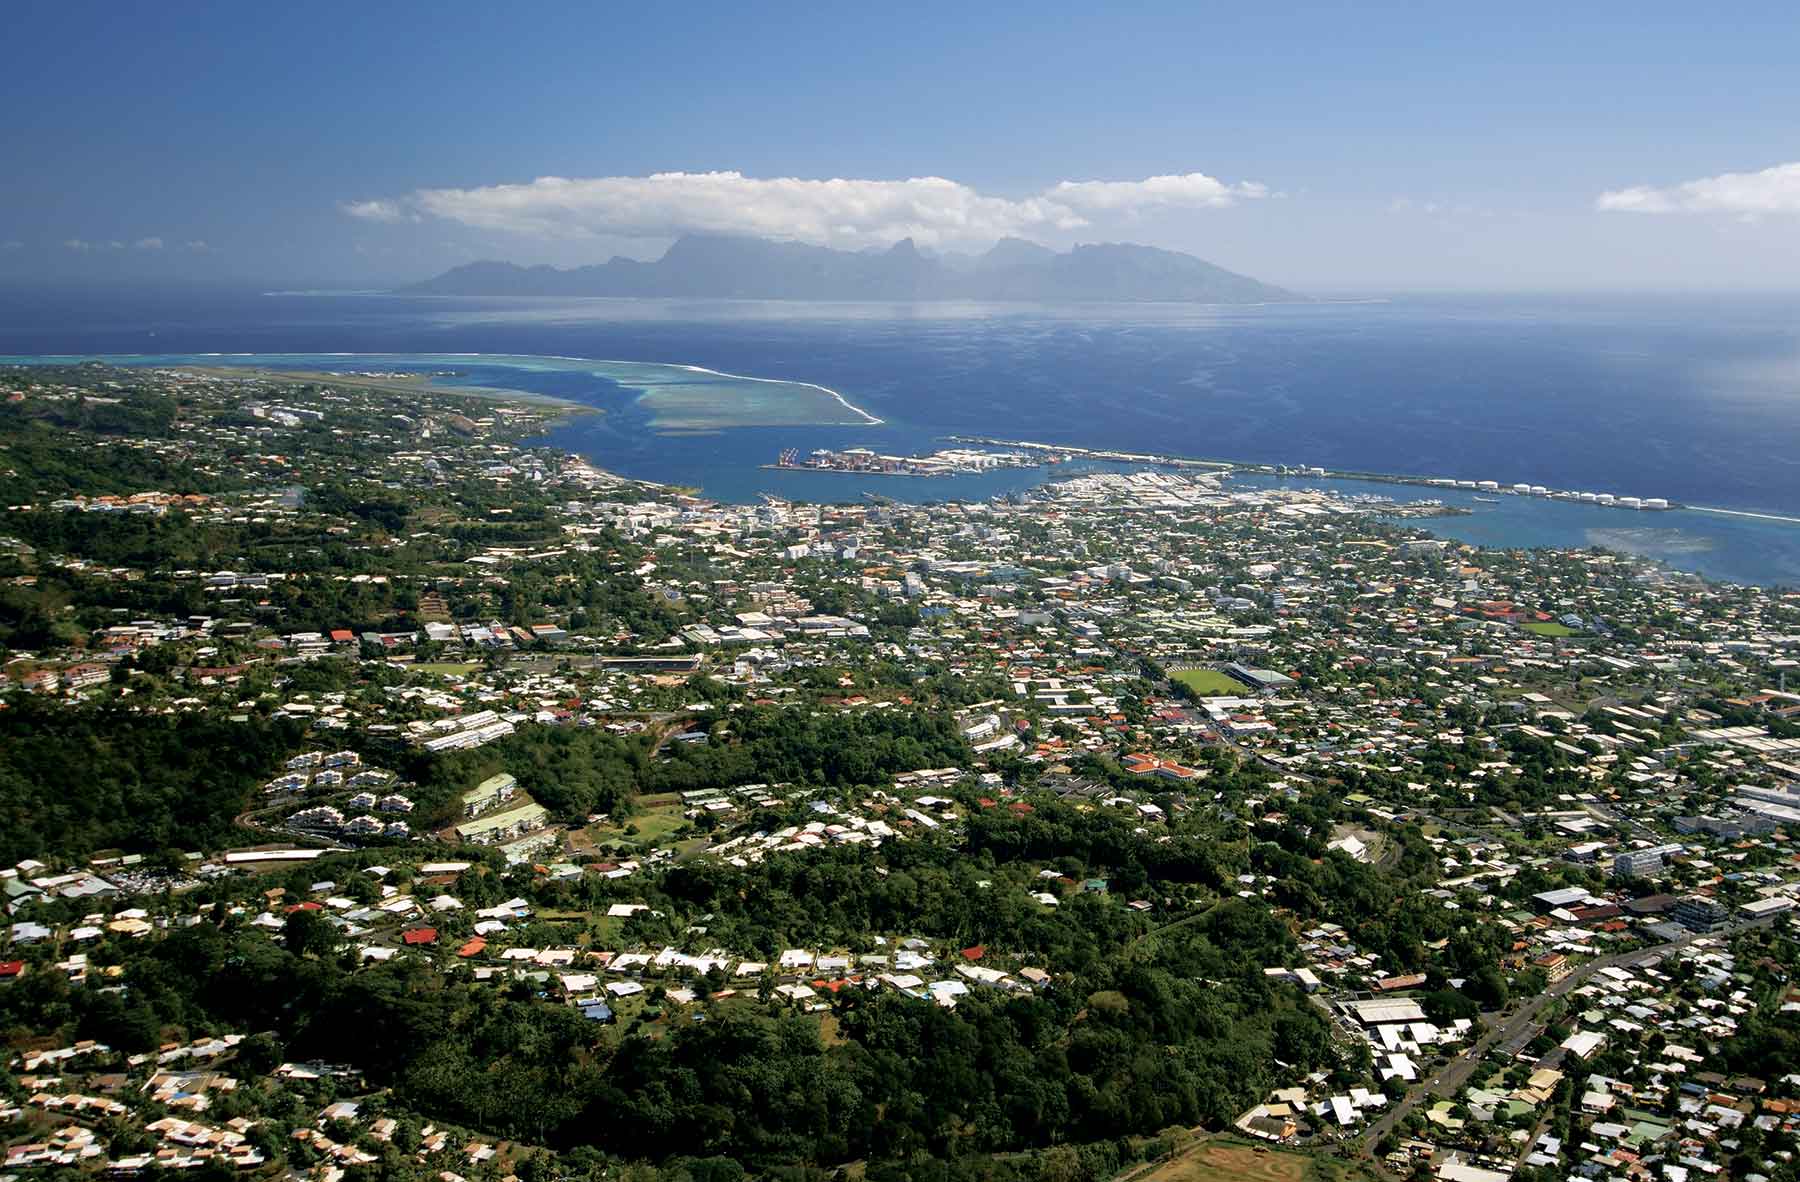 Économie : En Polynésie, baisse « historique » de l’emploi en avril 2020